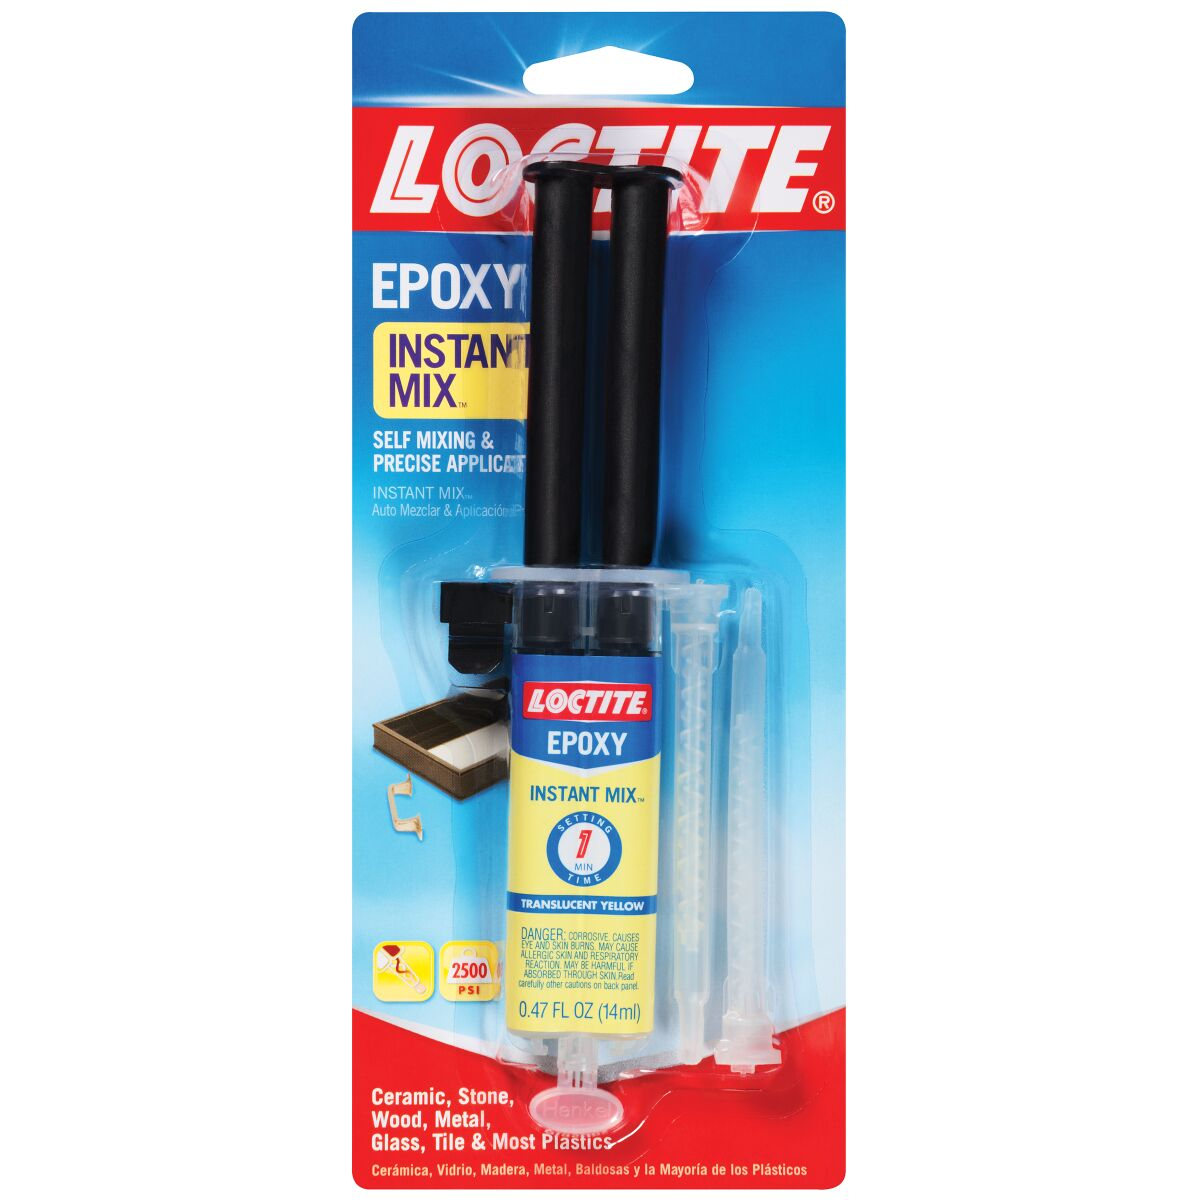 Loctite Epoxy Instant Mix